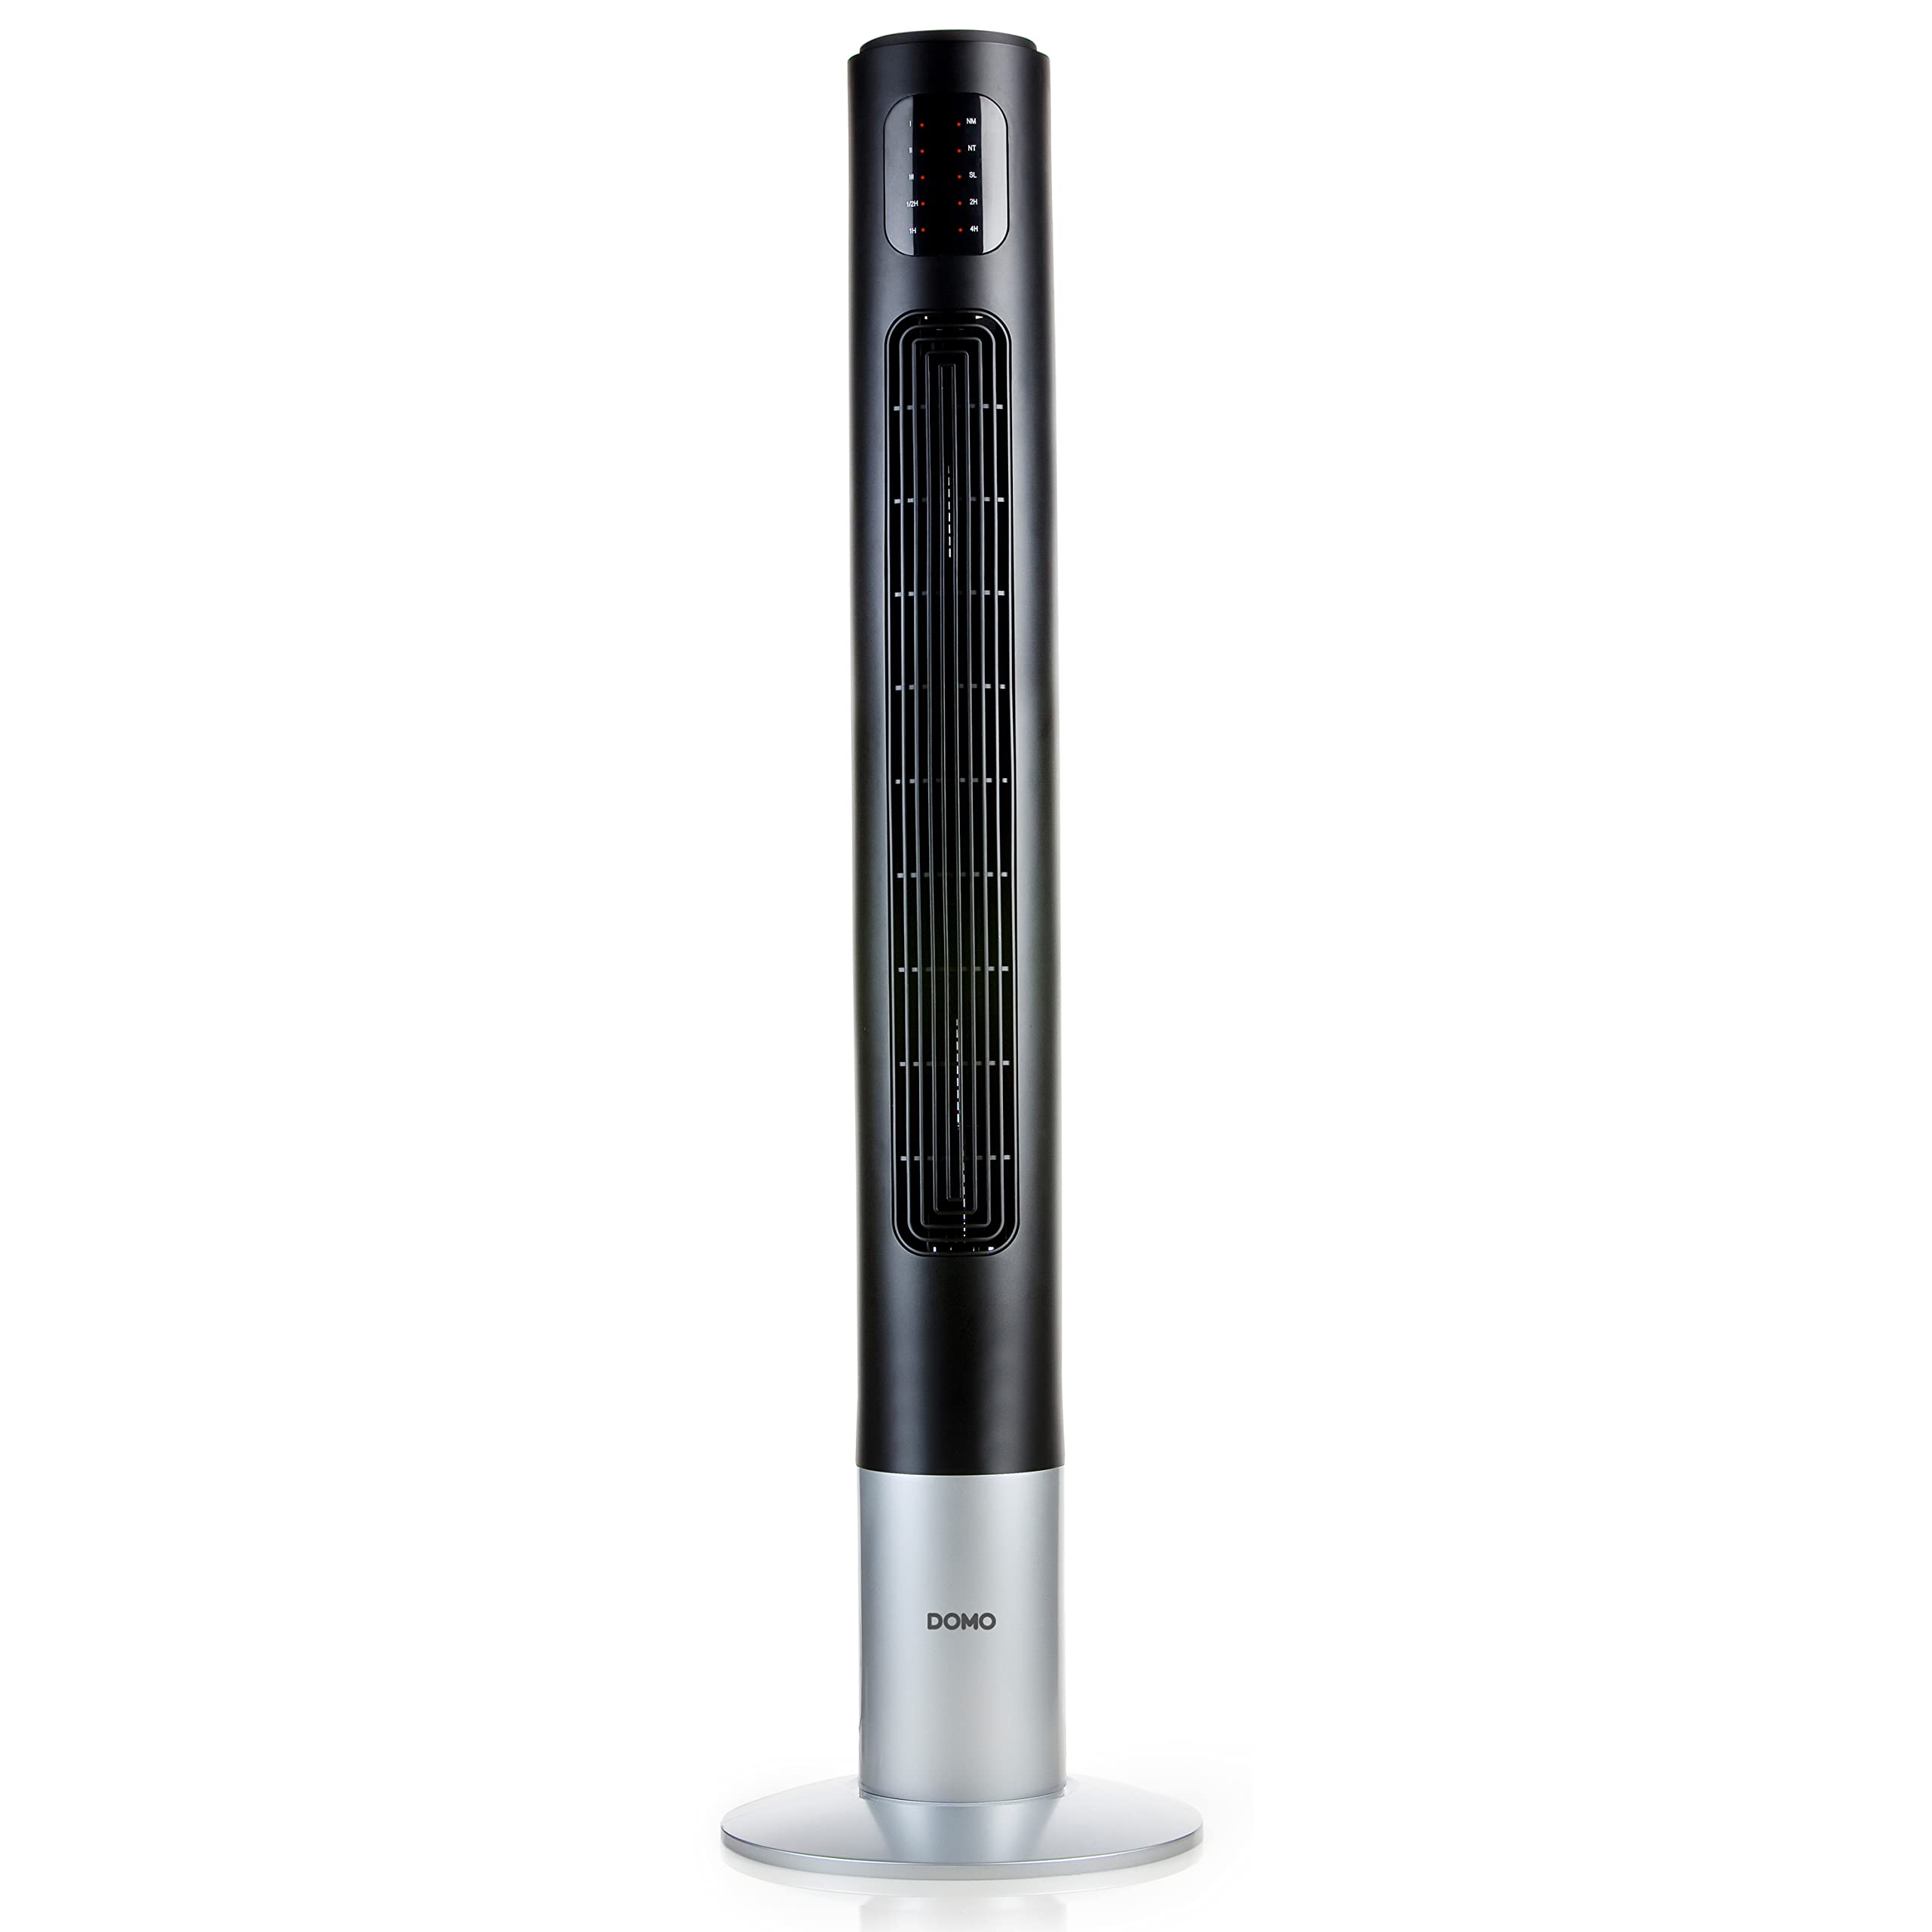 Domo DO8123 Turmventilator schwarz/silber mit Fernbedienung, LED-Display und 7,5 Std.-Timer